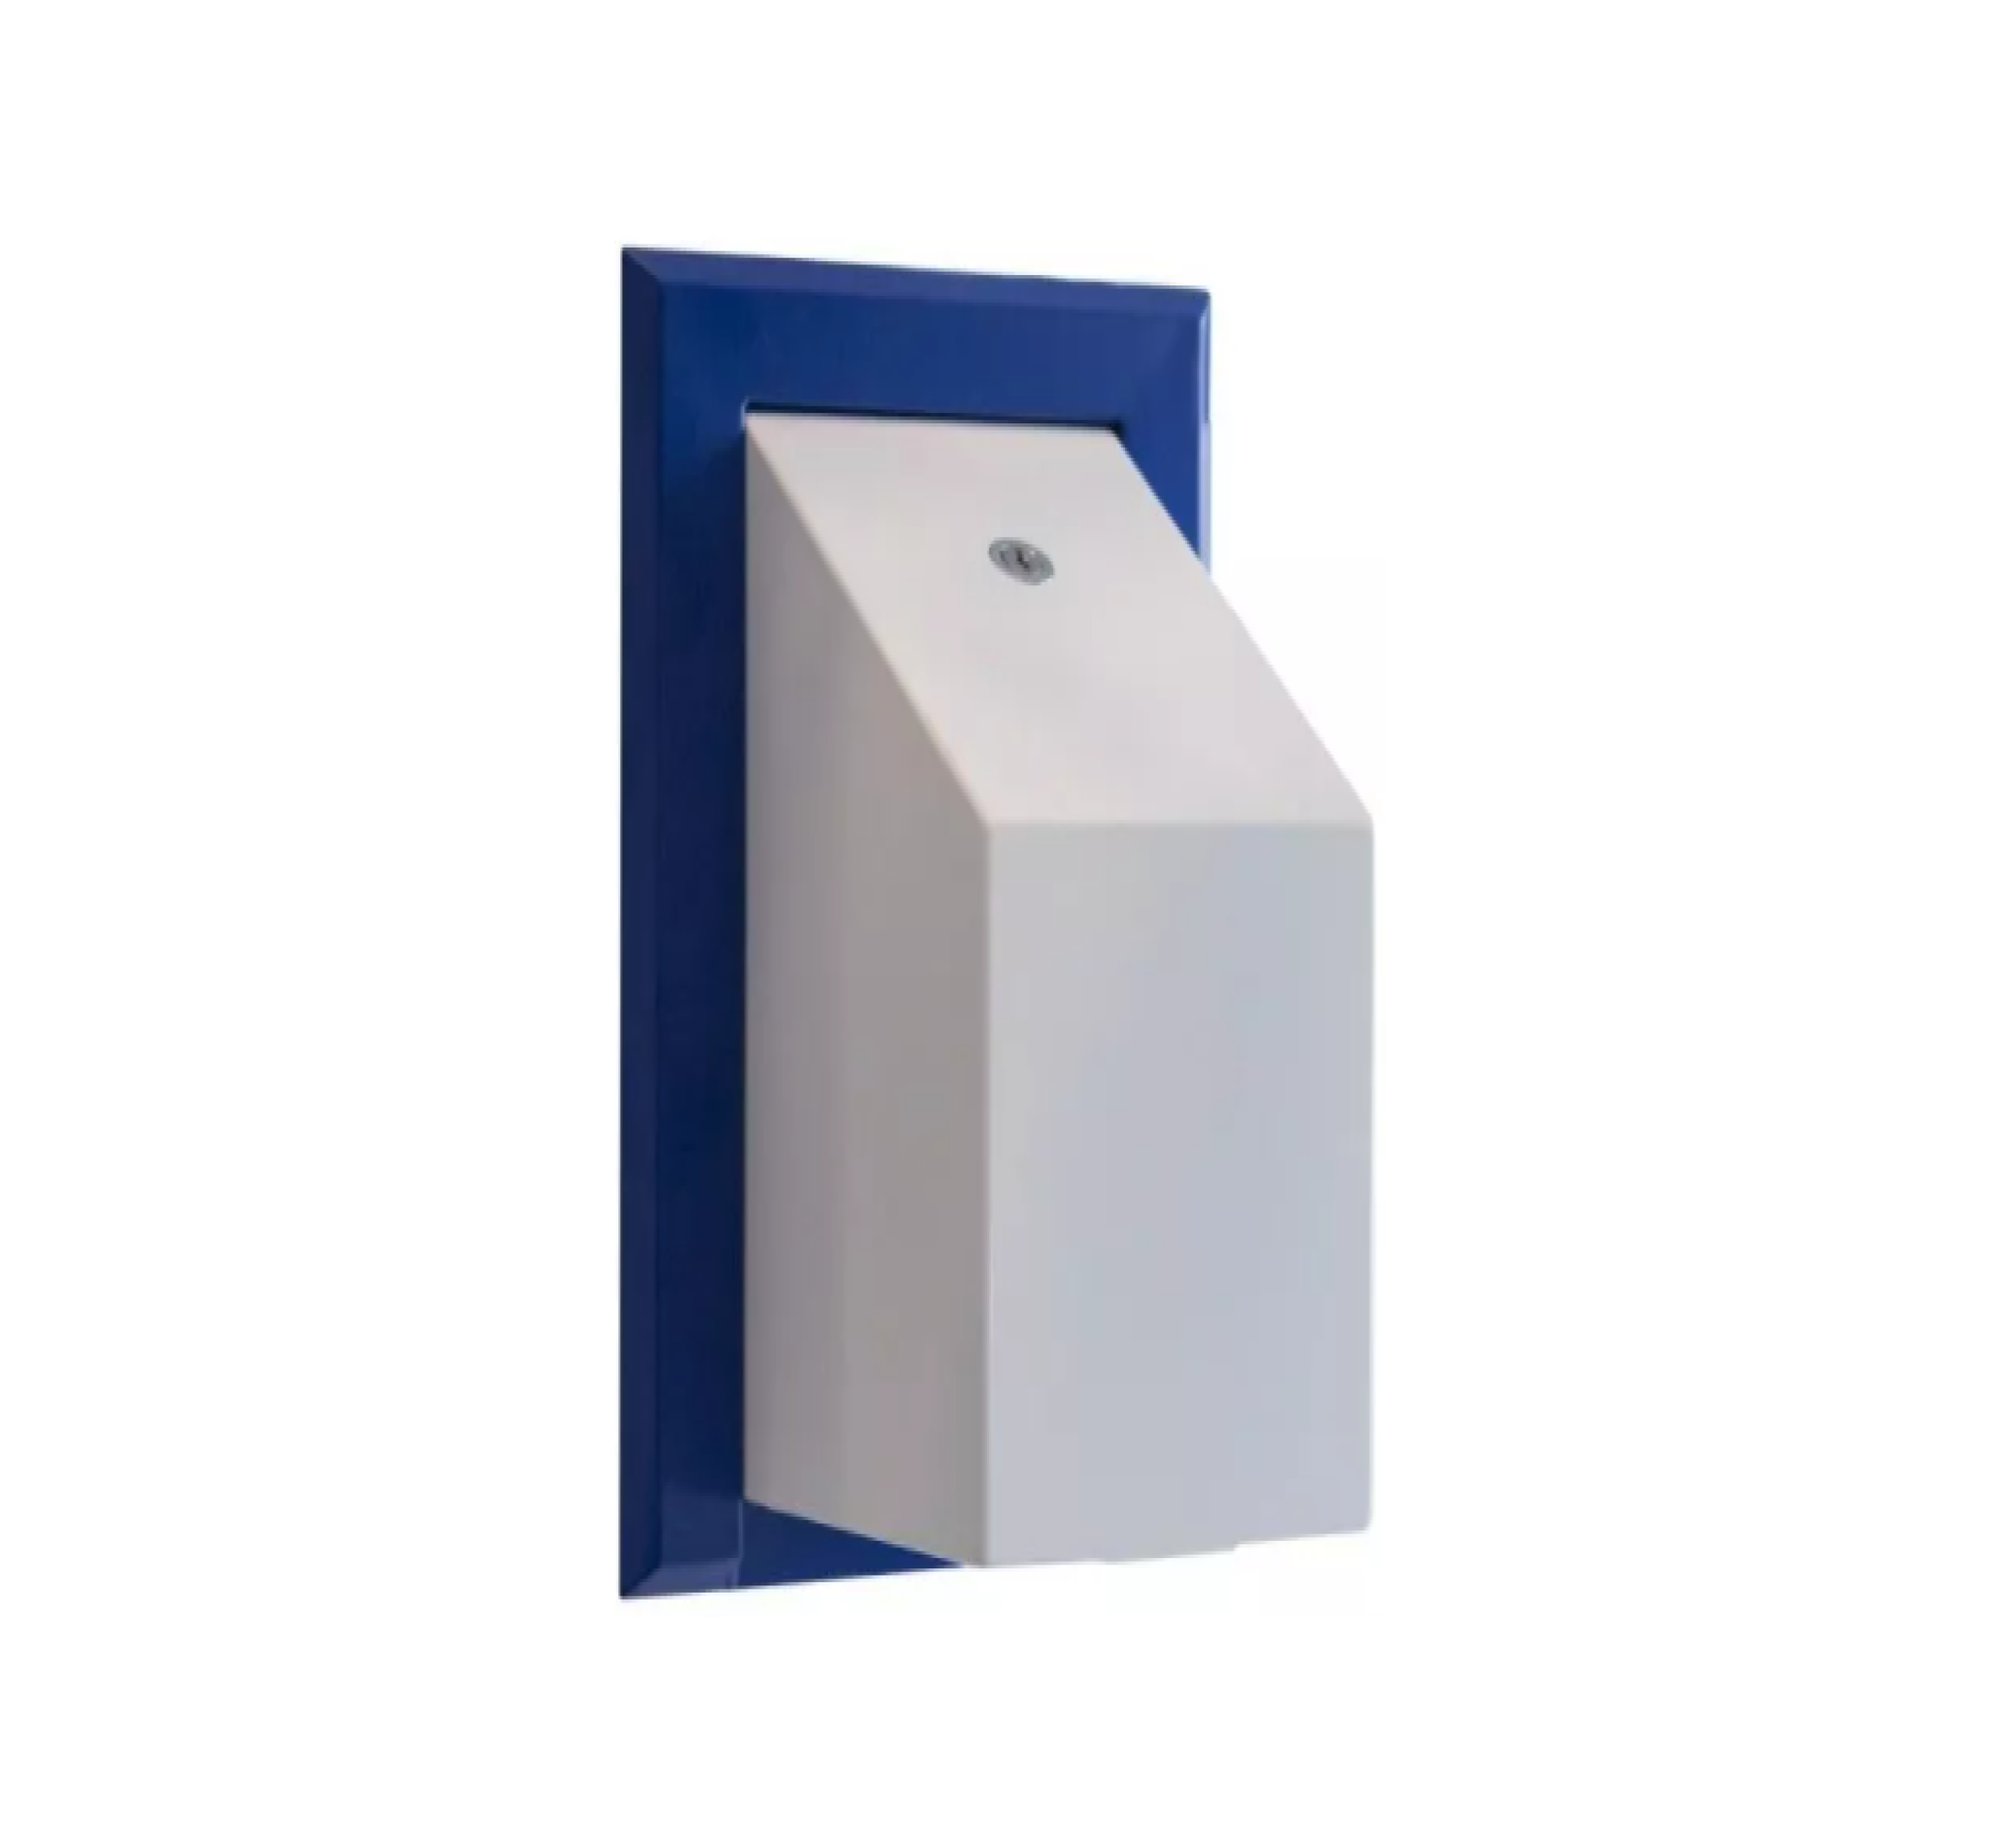 Anti-Ligature Multi Flat Toilet Tissue Dispenser